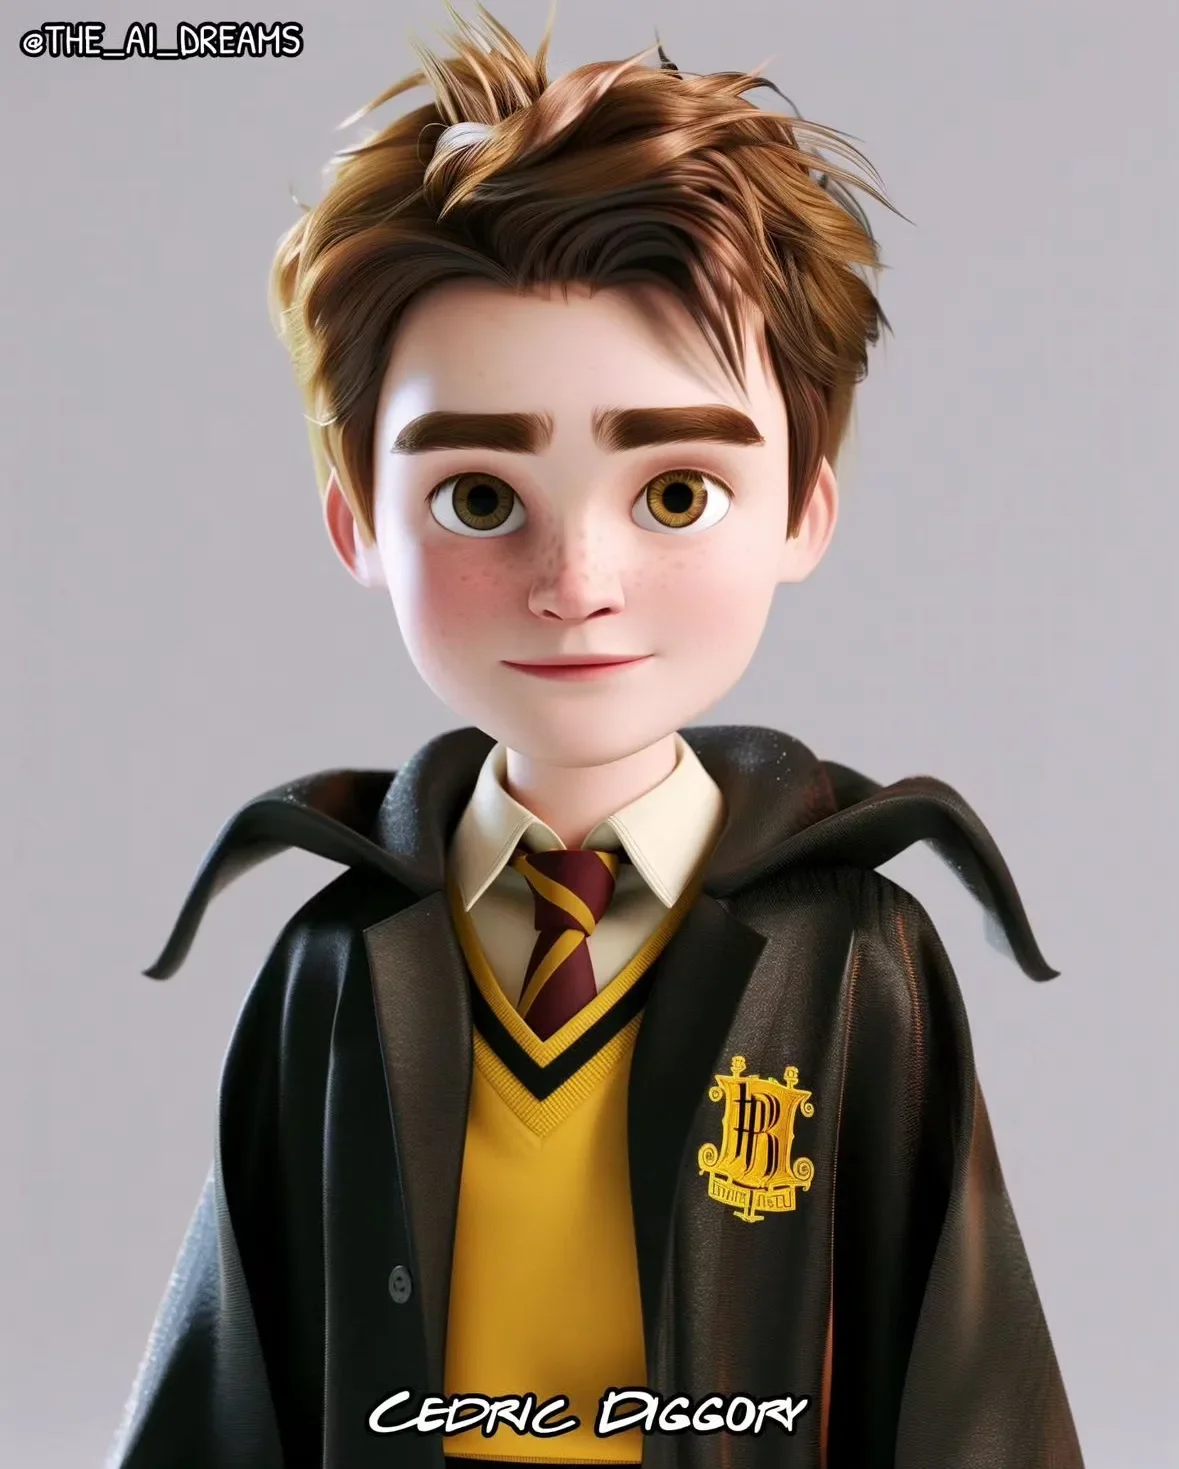 แฮร์รี่ พอตเตอร์ Harry Potter Disney Pixar Aiart